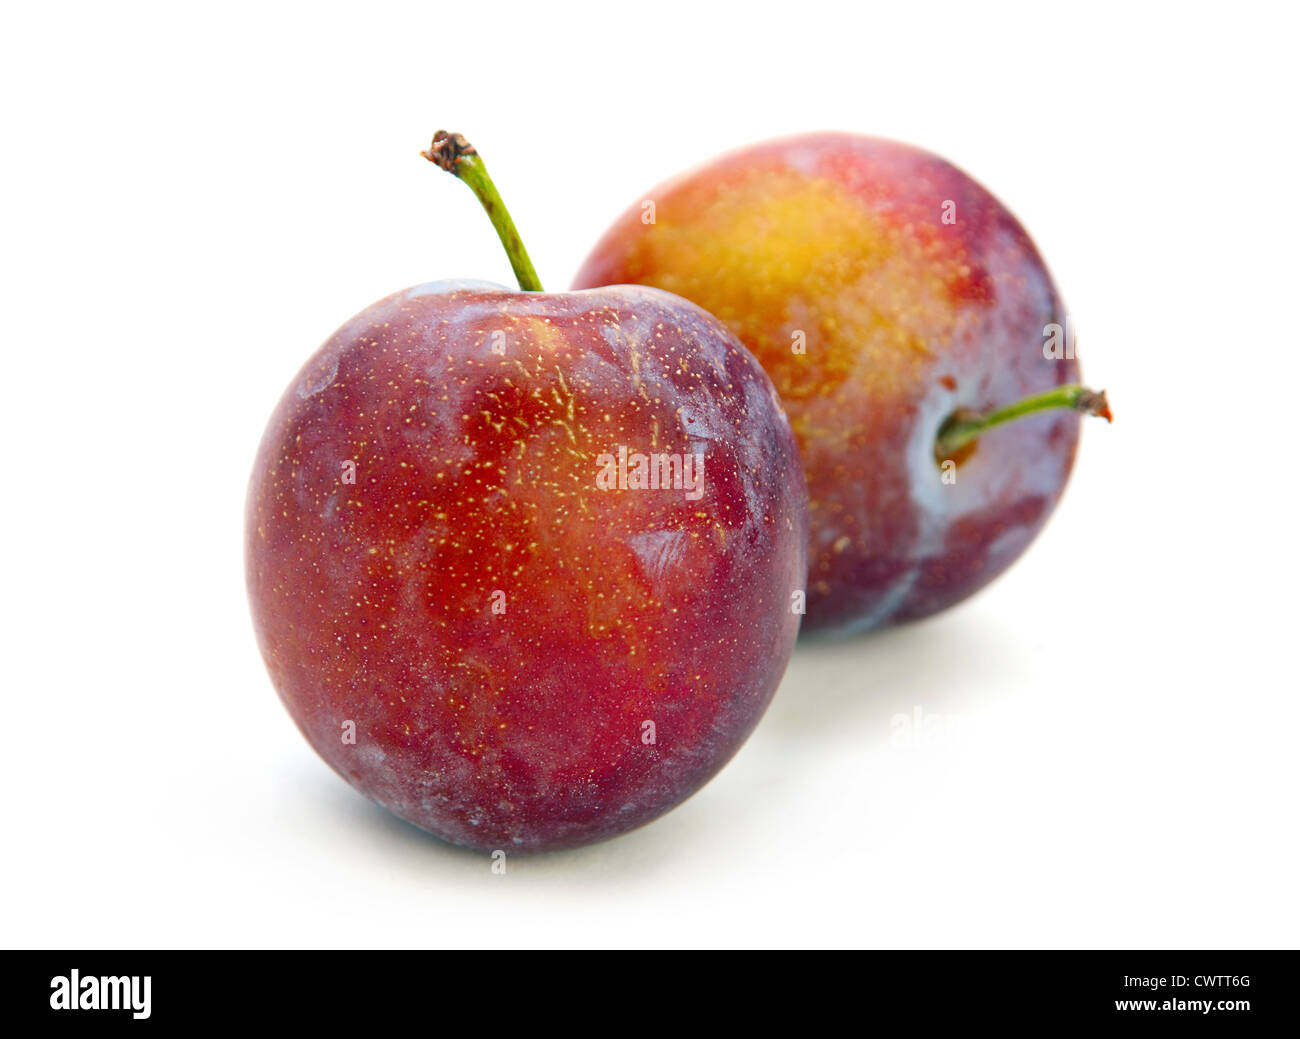 Plum fruit isolated on white background Stock Photo